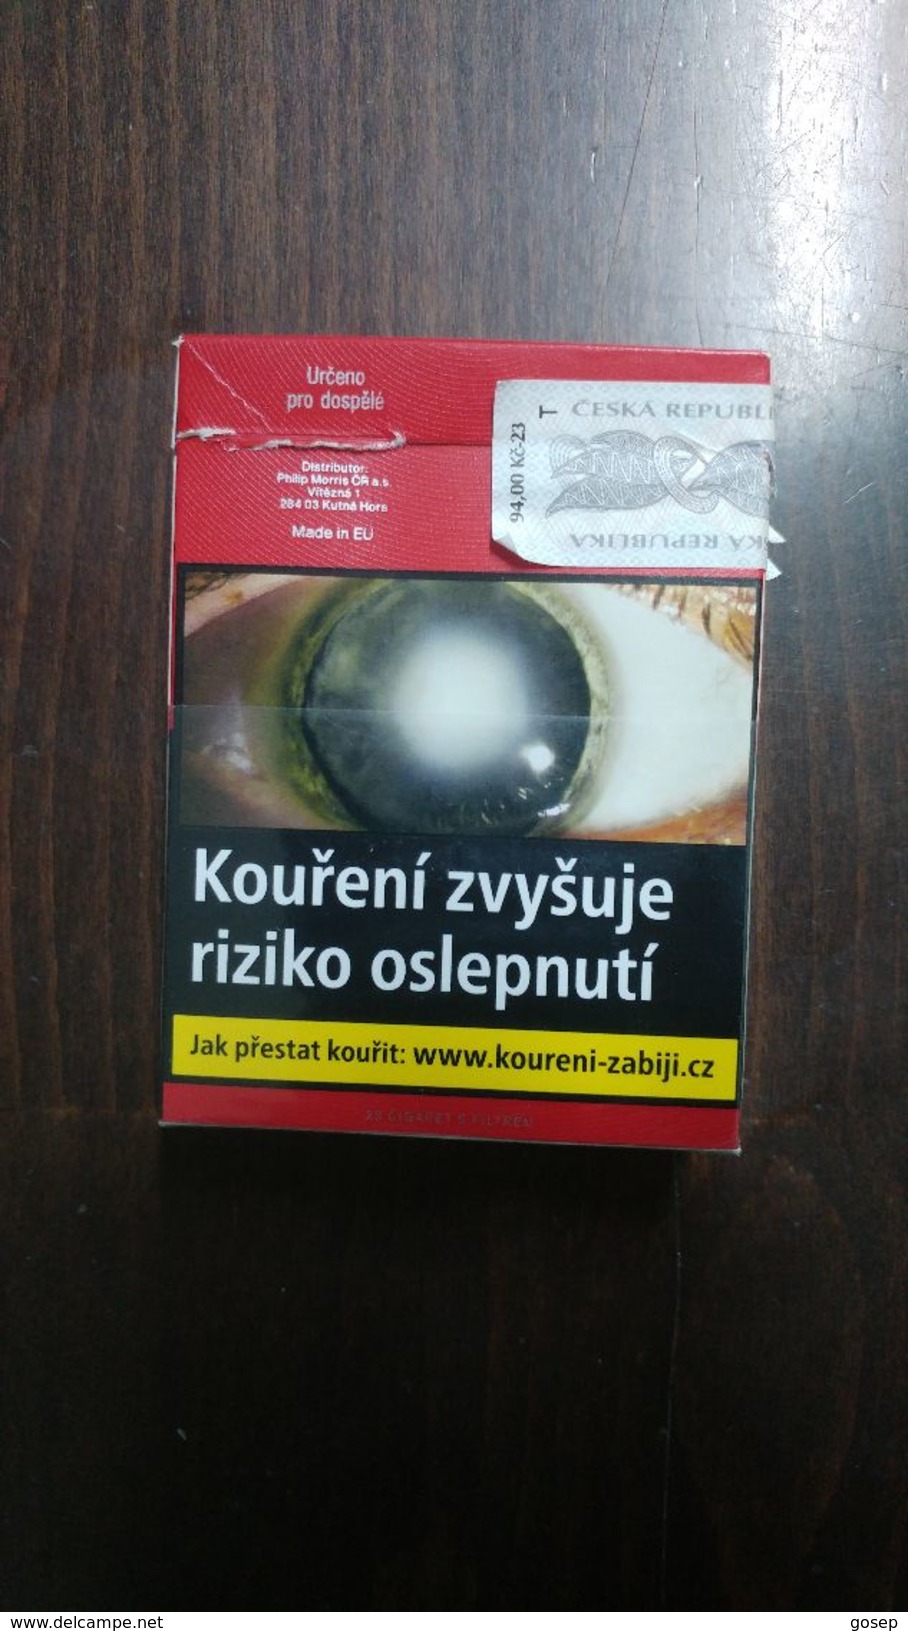 Boxes-Ceska Republika-box Empty Cigarette-marlboro-L&M-red Label - Empty Cigarettes Boxes